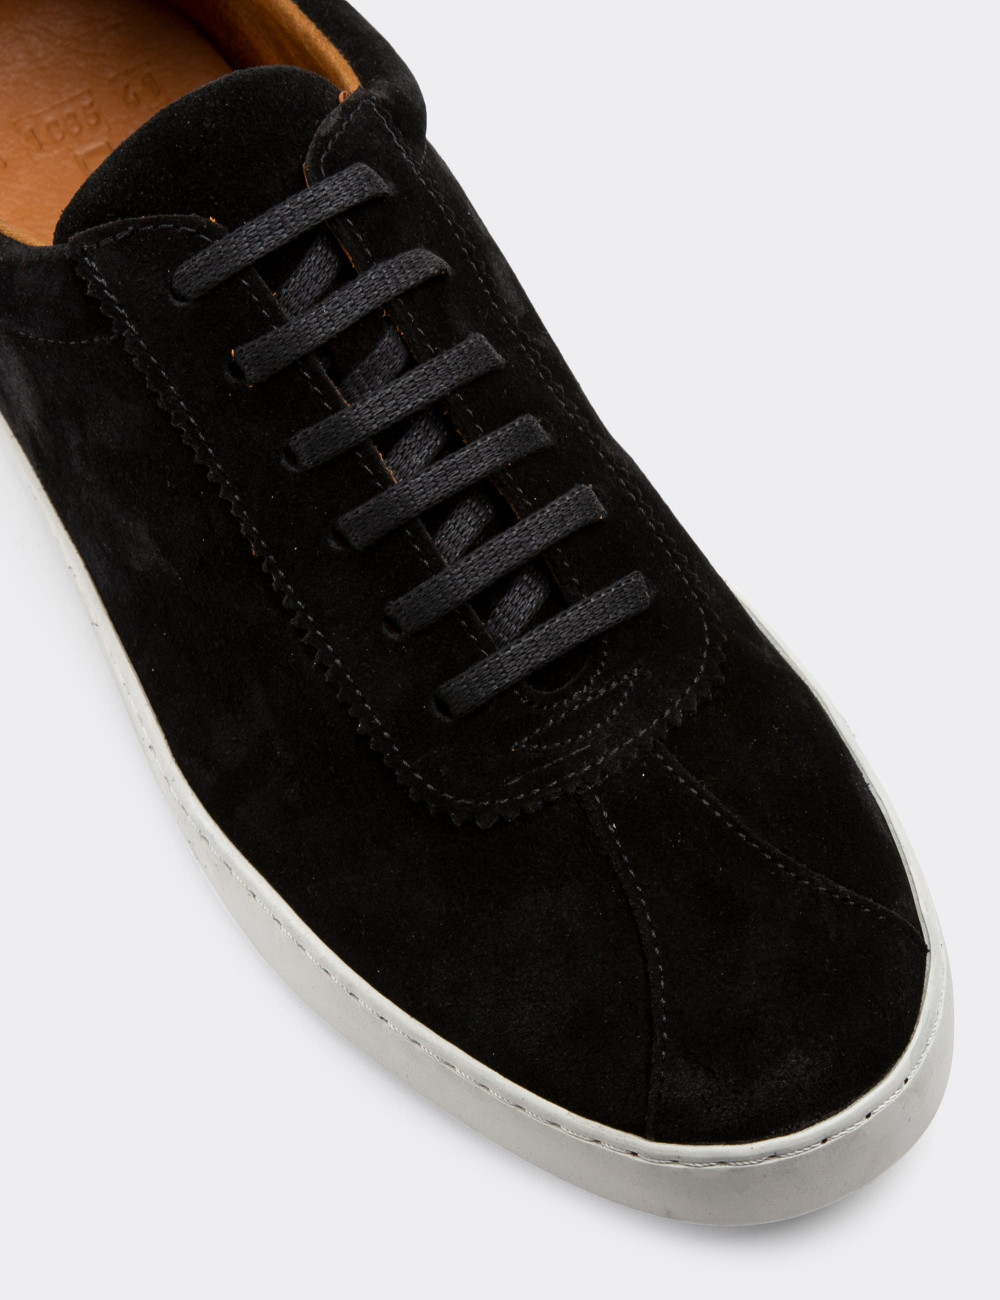 Hakiki Süet Siyah Sneaker Erkek Ayakkabı - 01885MSYHC01